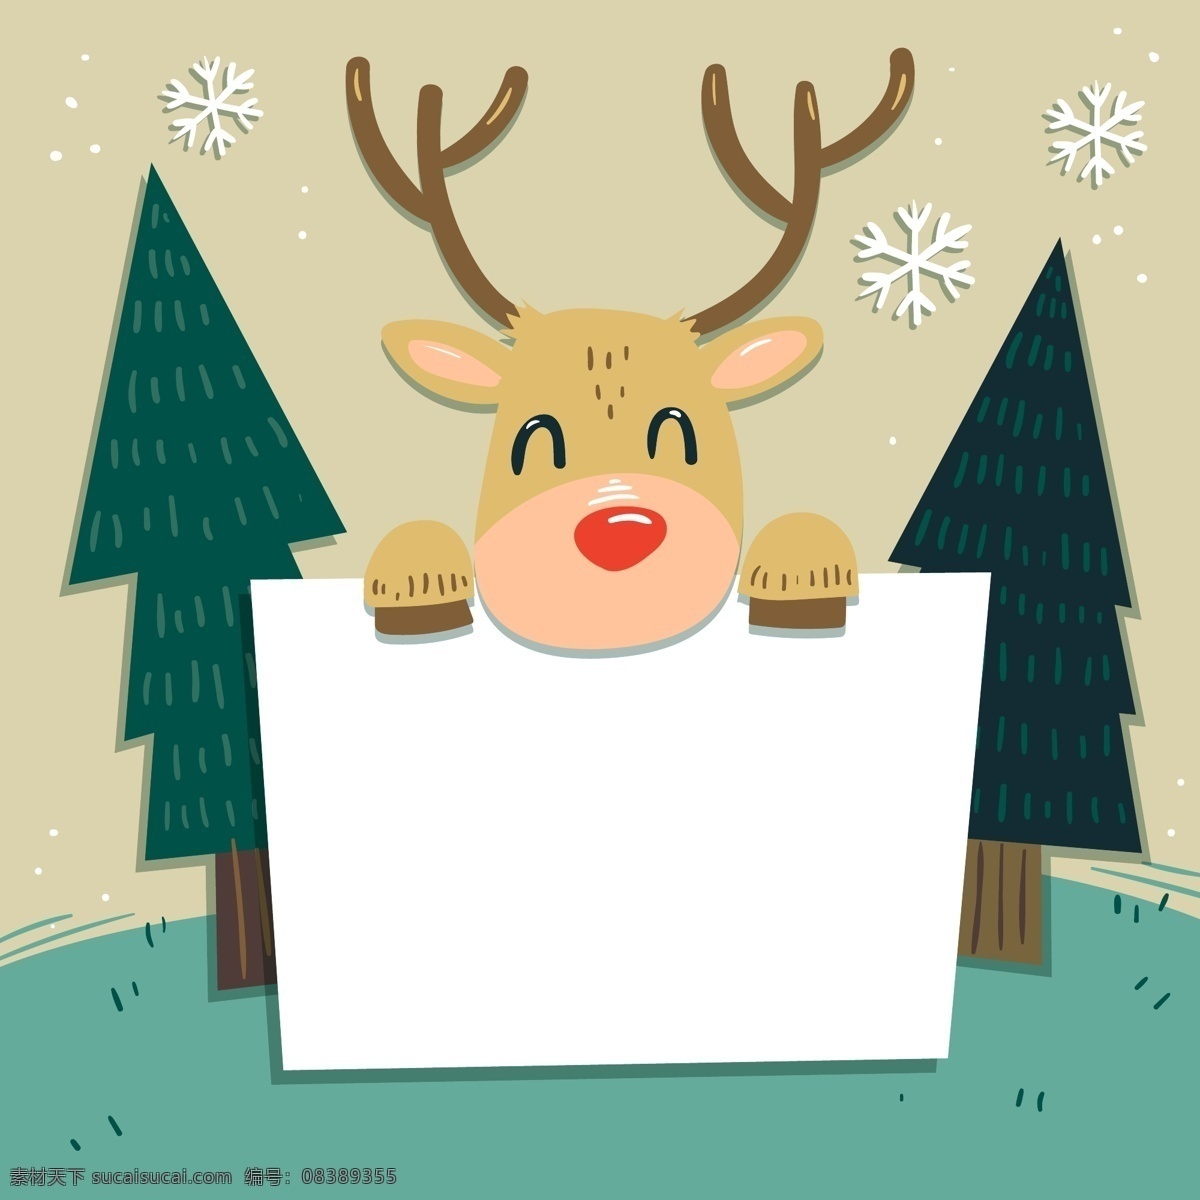 手 空白 标志 背景 驯鹿 圣诞节 节日 圣诞树 雪花 绿色 空白标志 手拿 过节 庆祝 狂欢 西方节日 假期 扁平 矢量 卡通 树木